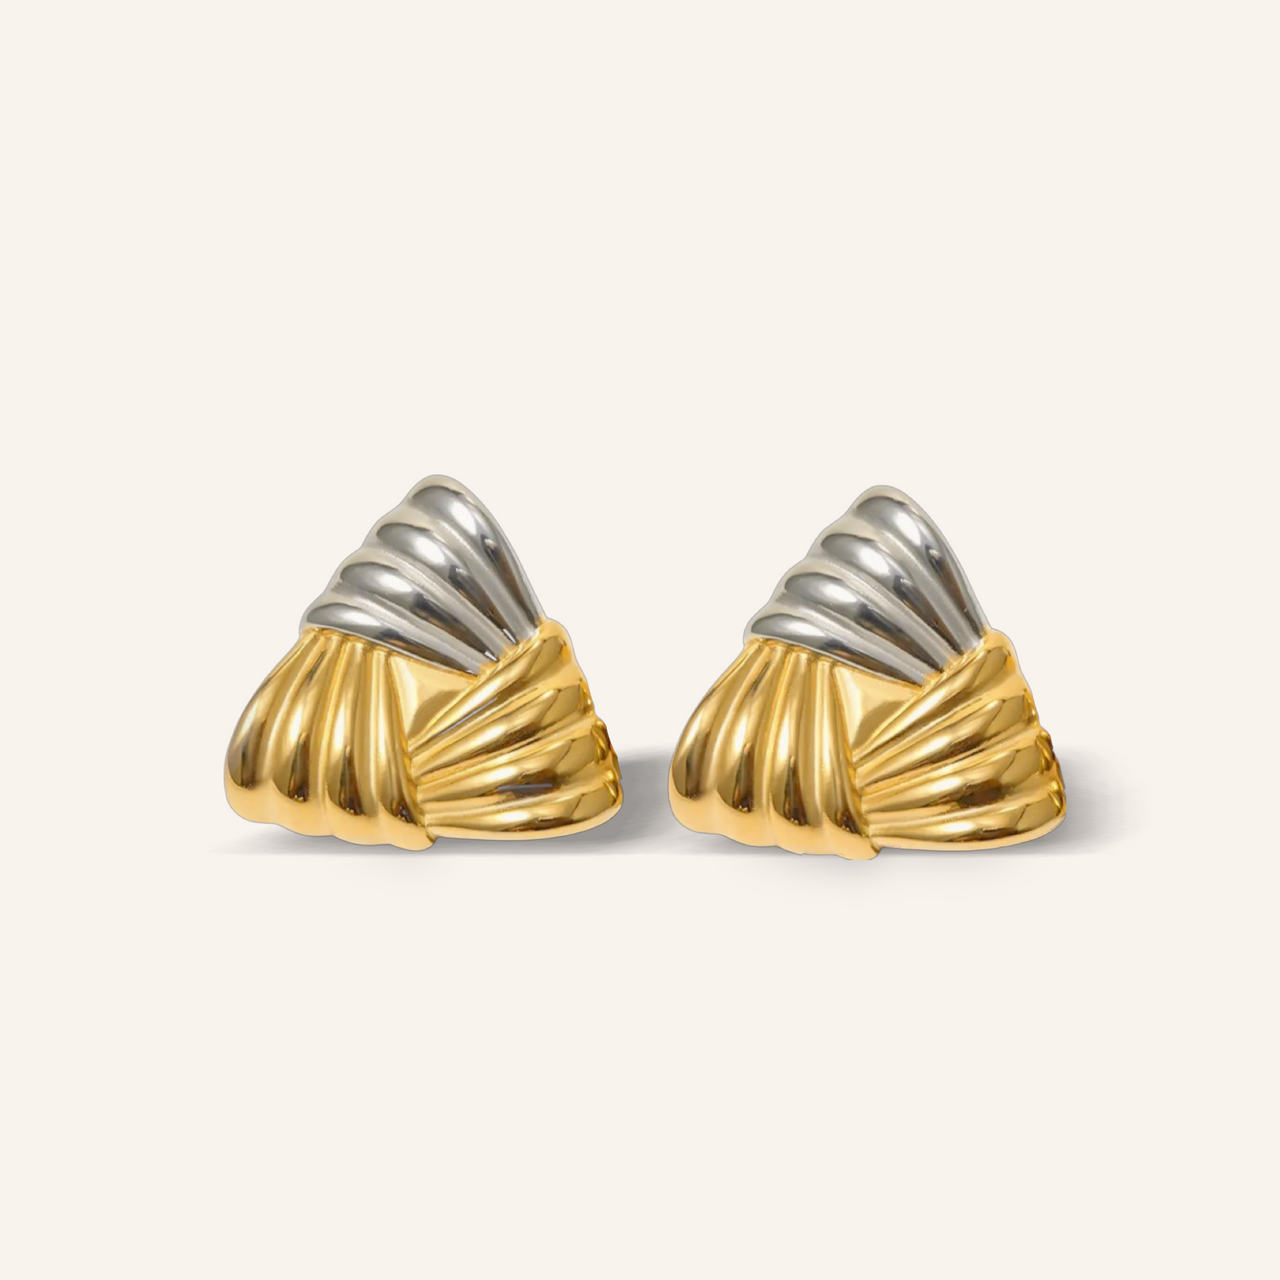 Alyssa earrings 💧